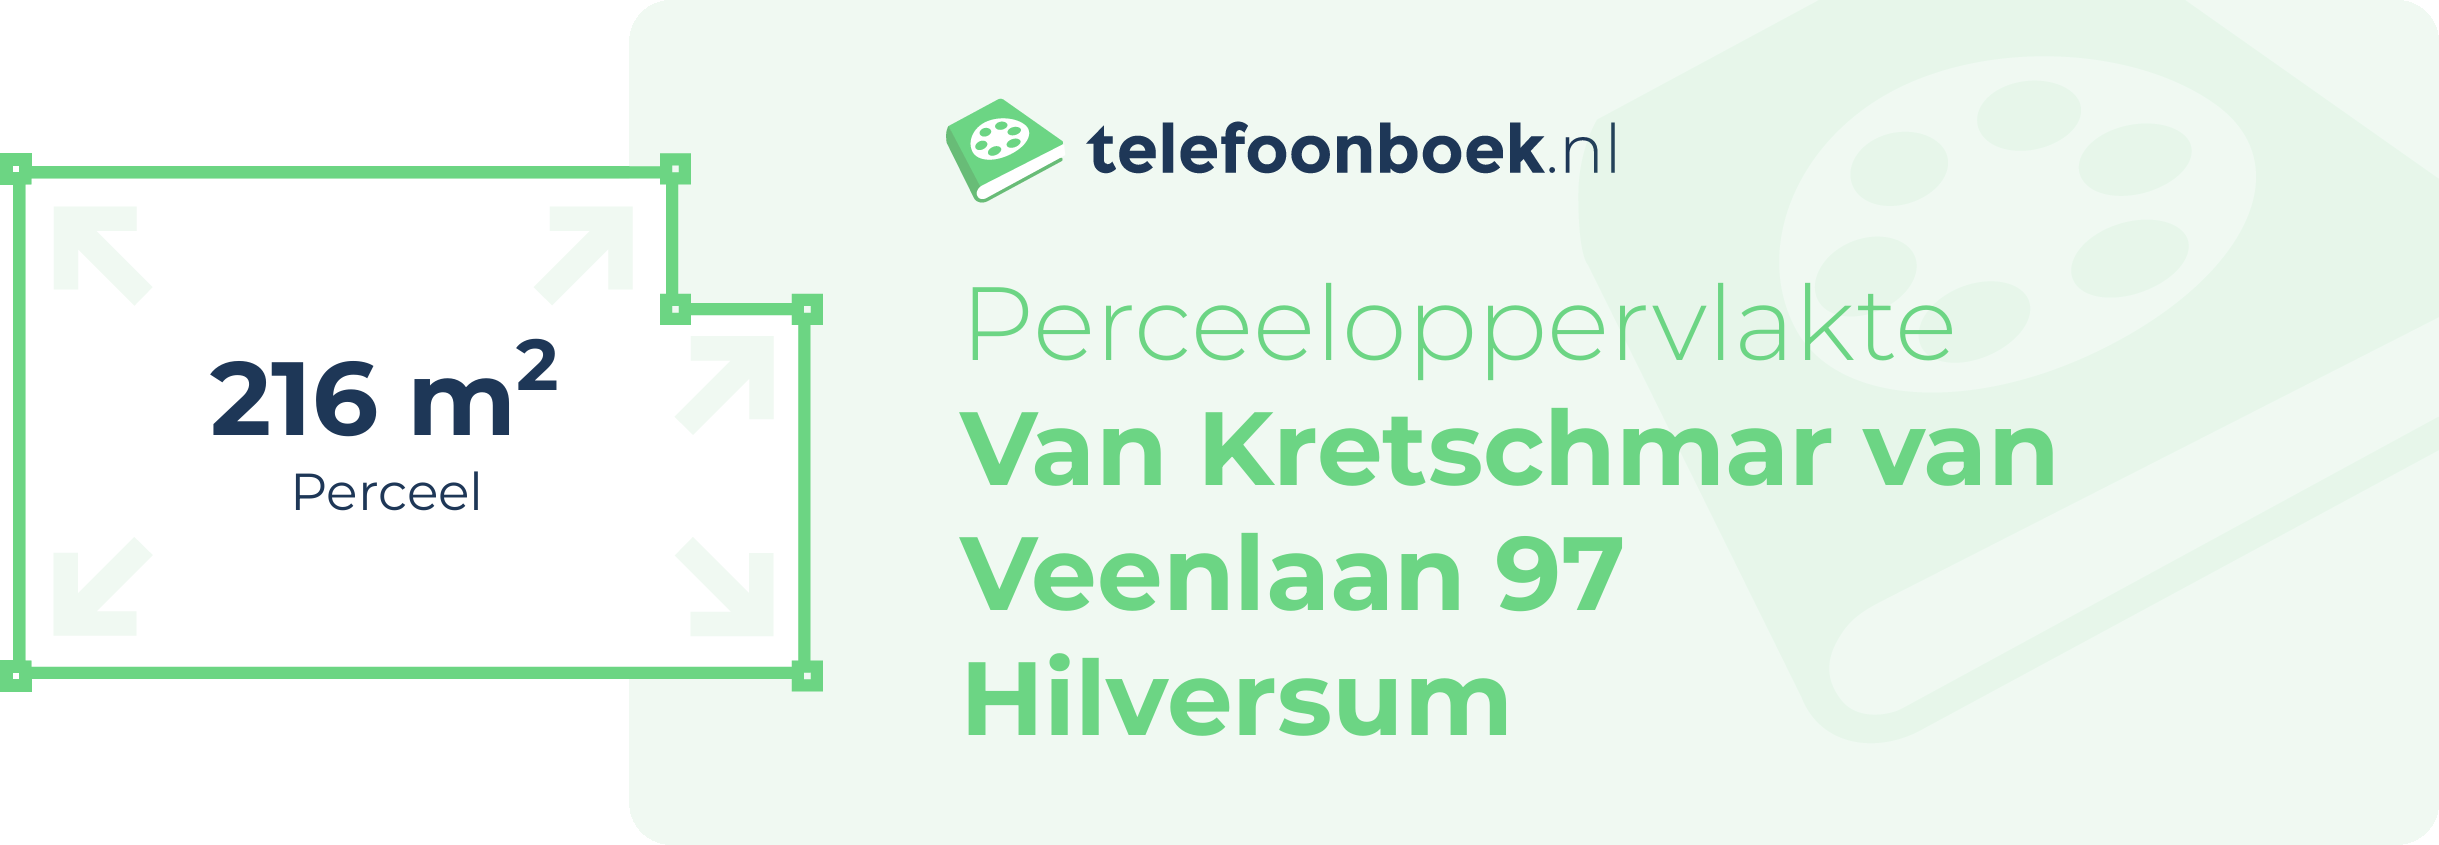 Perceeloppervlakte Van Kretschmar Van Veenlaan 97 Hilversum